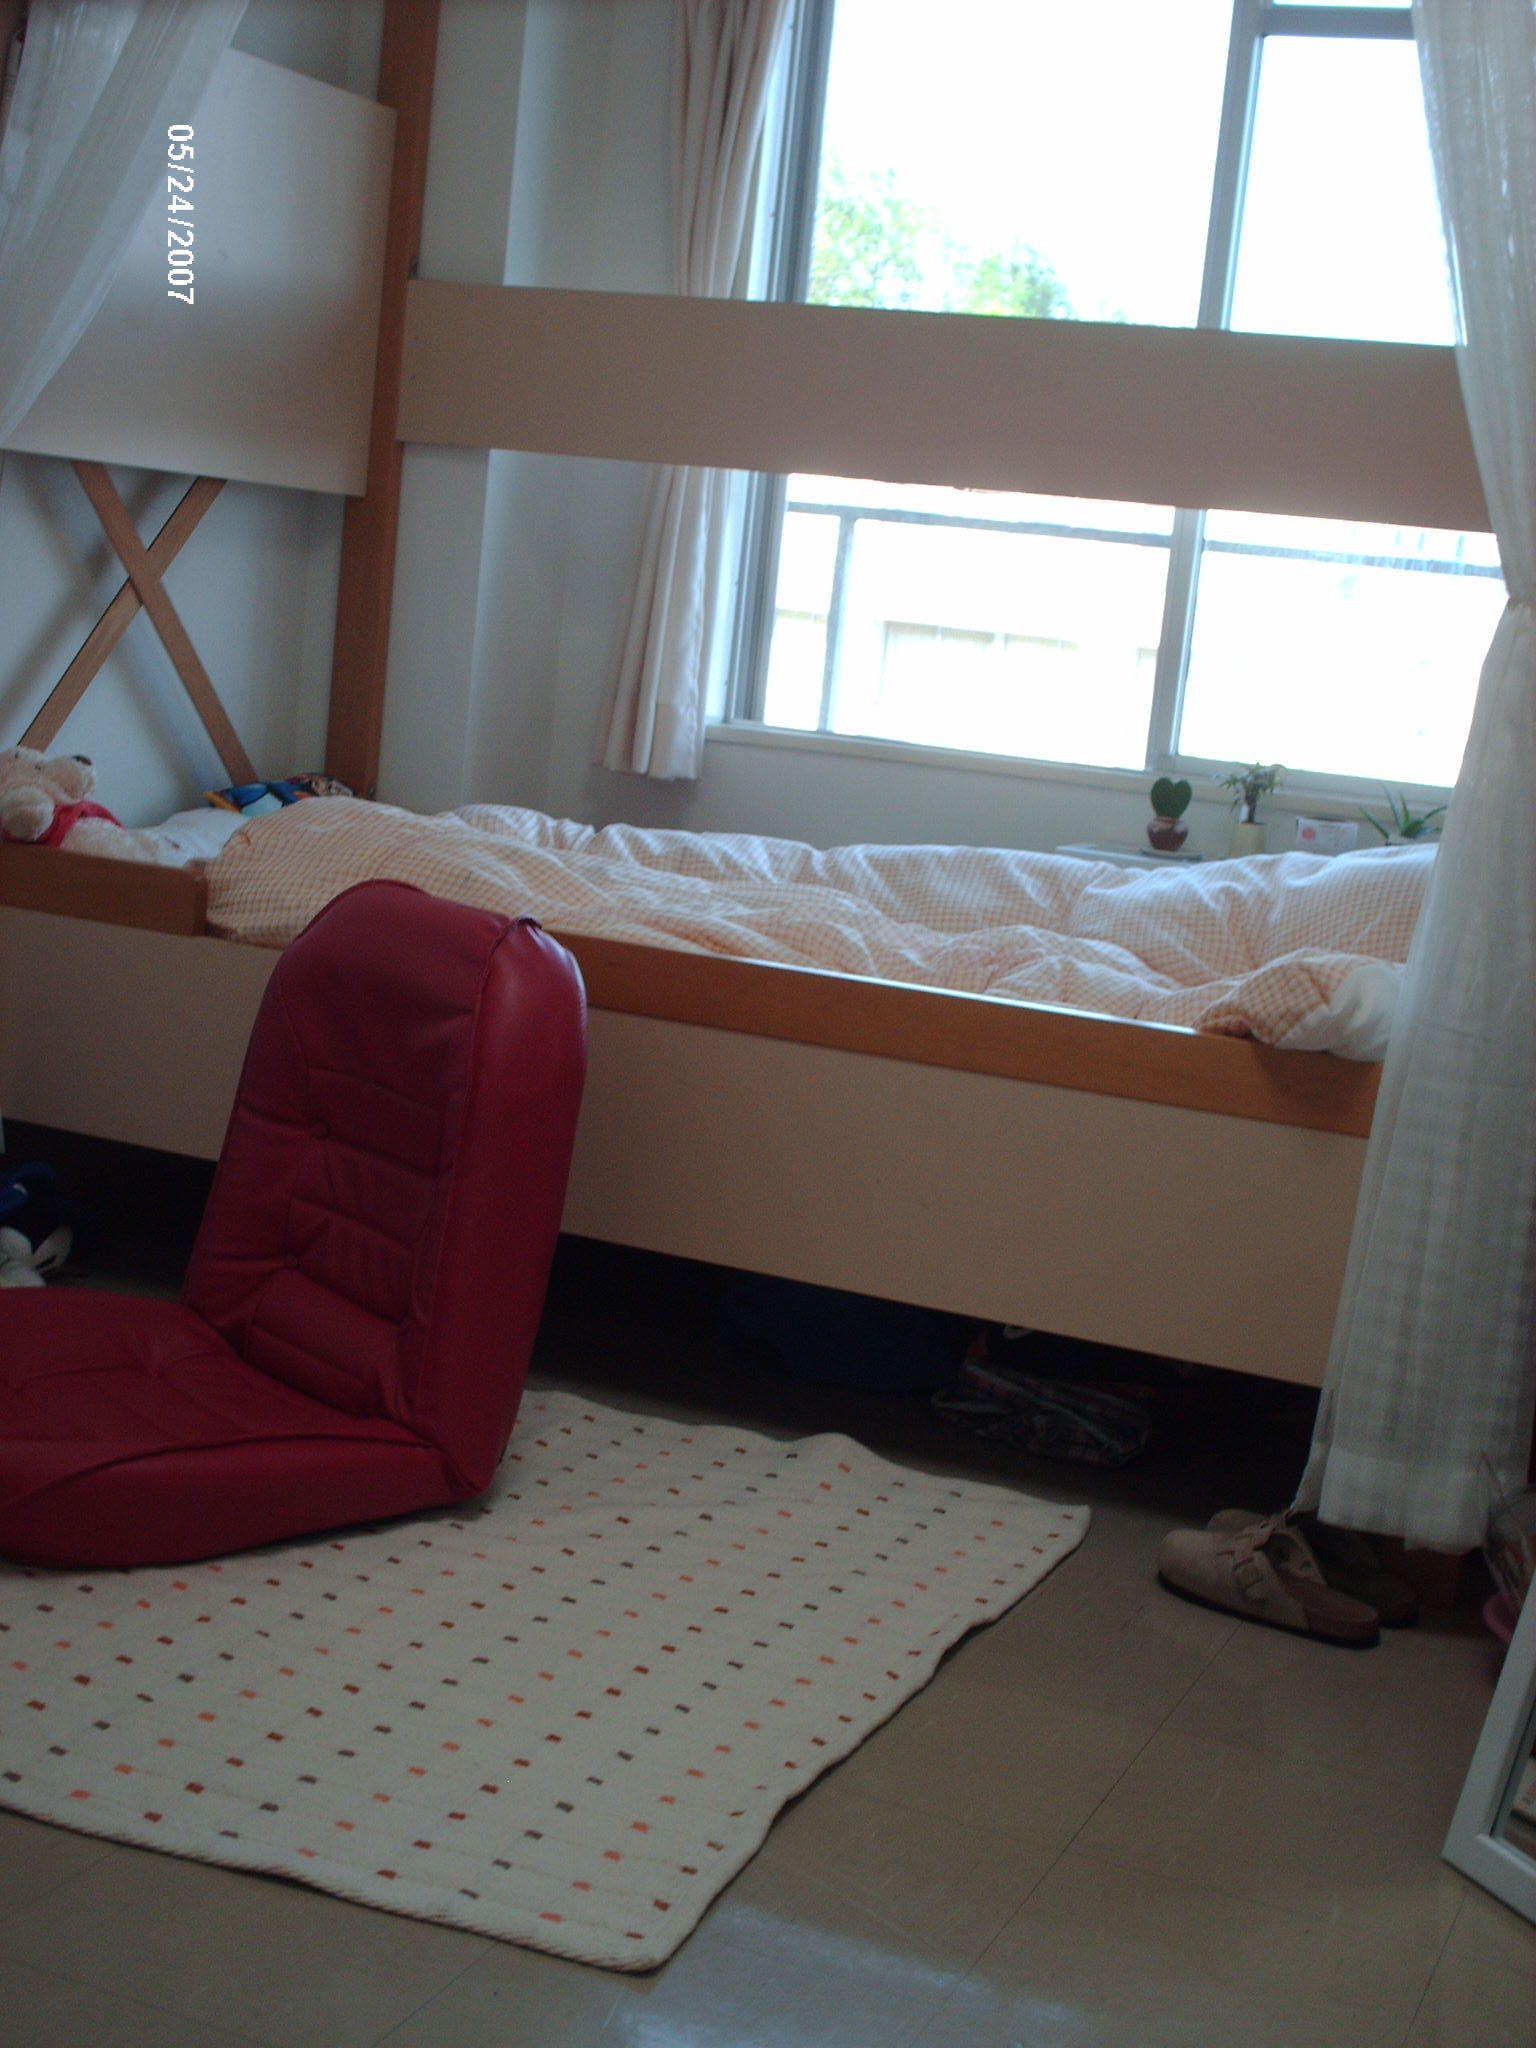 寮部屋 Does Room 公開 国際教養大学 ａｉｕ を日本全国に広め隊